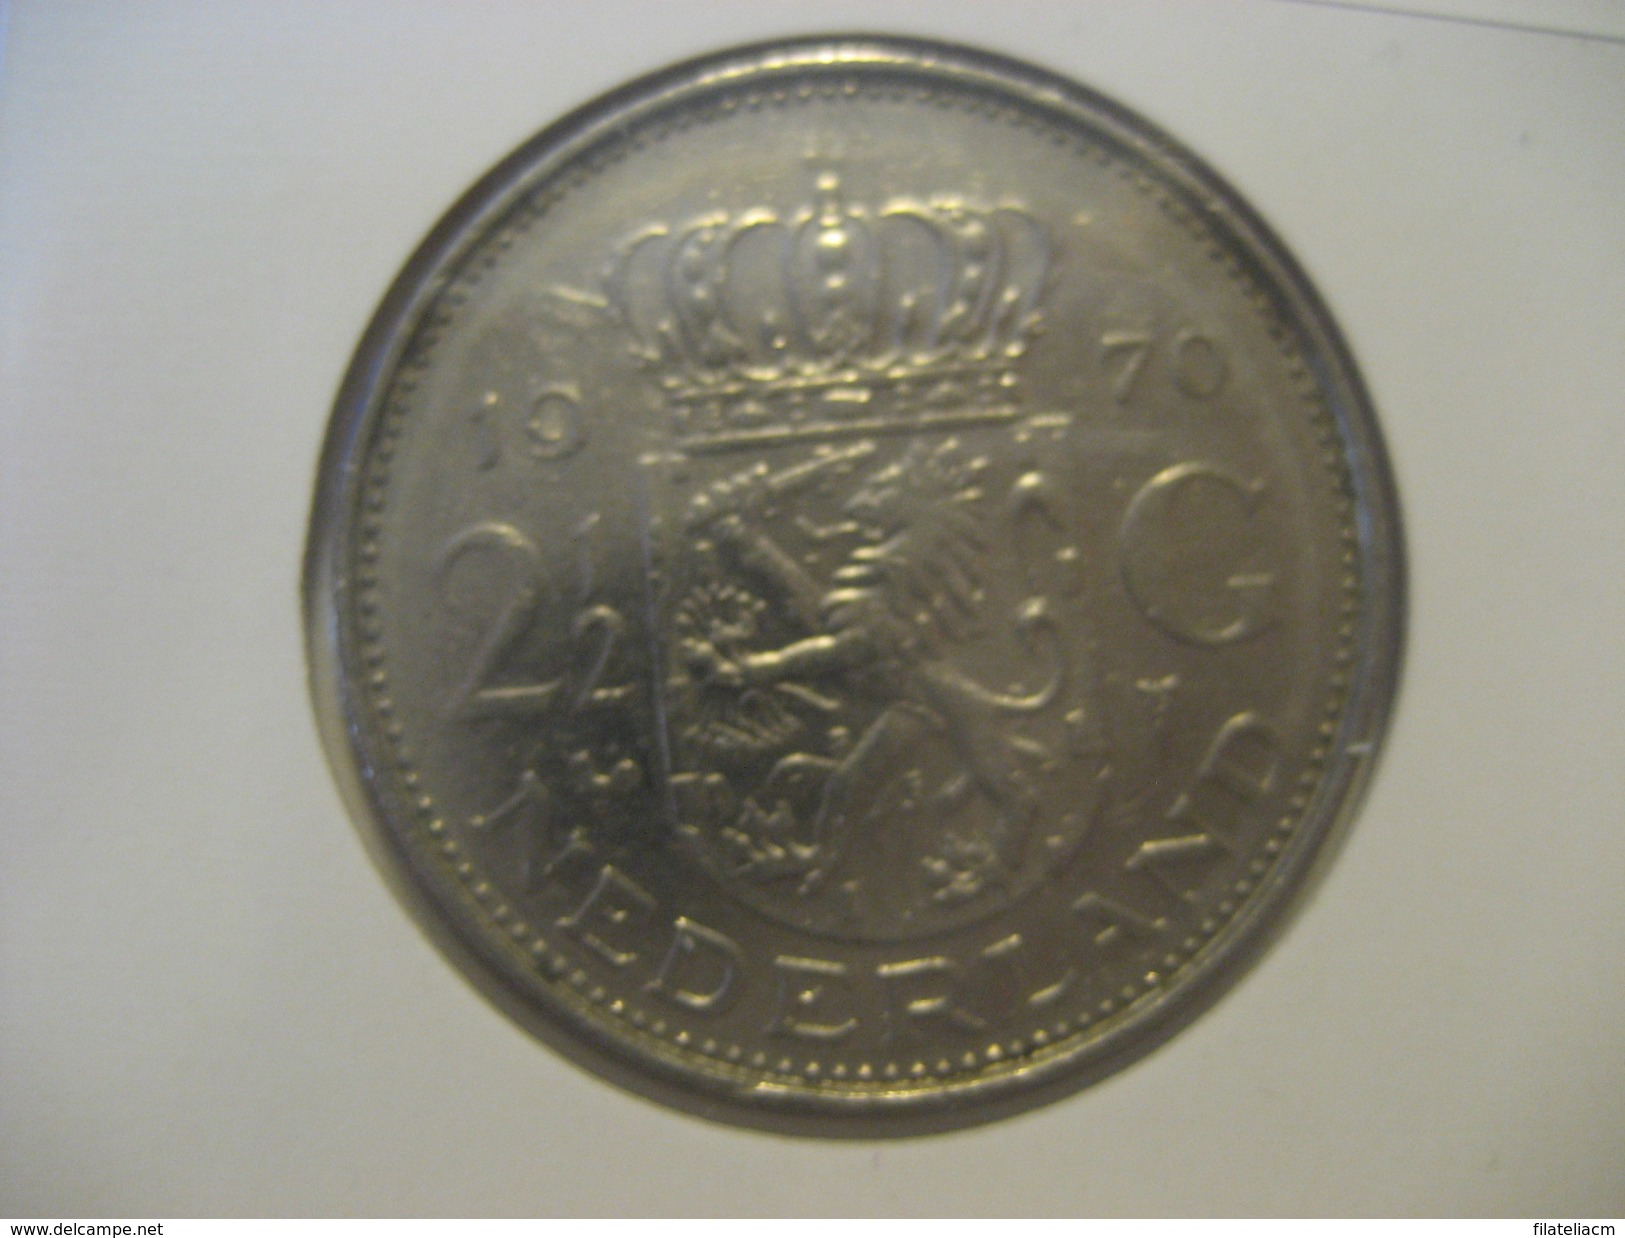 2 1/2 G 1970 NETHERLANDS Pays Bas Coin - 1948-1980 : Juliana